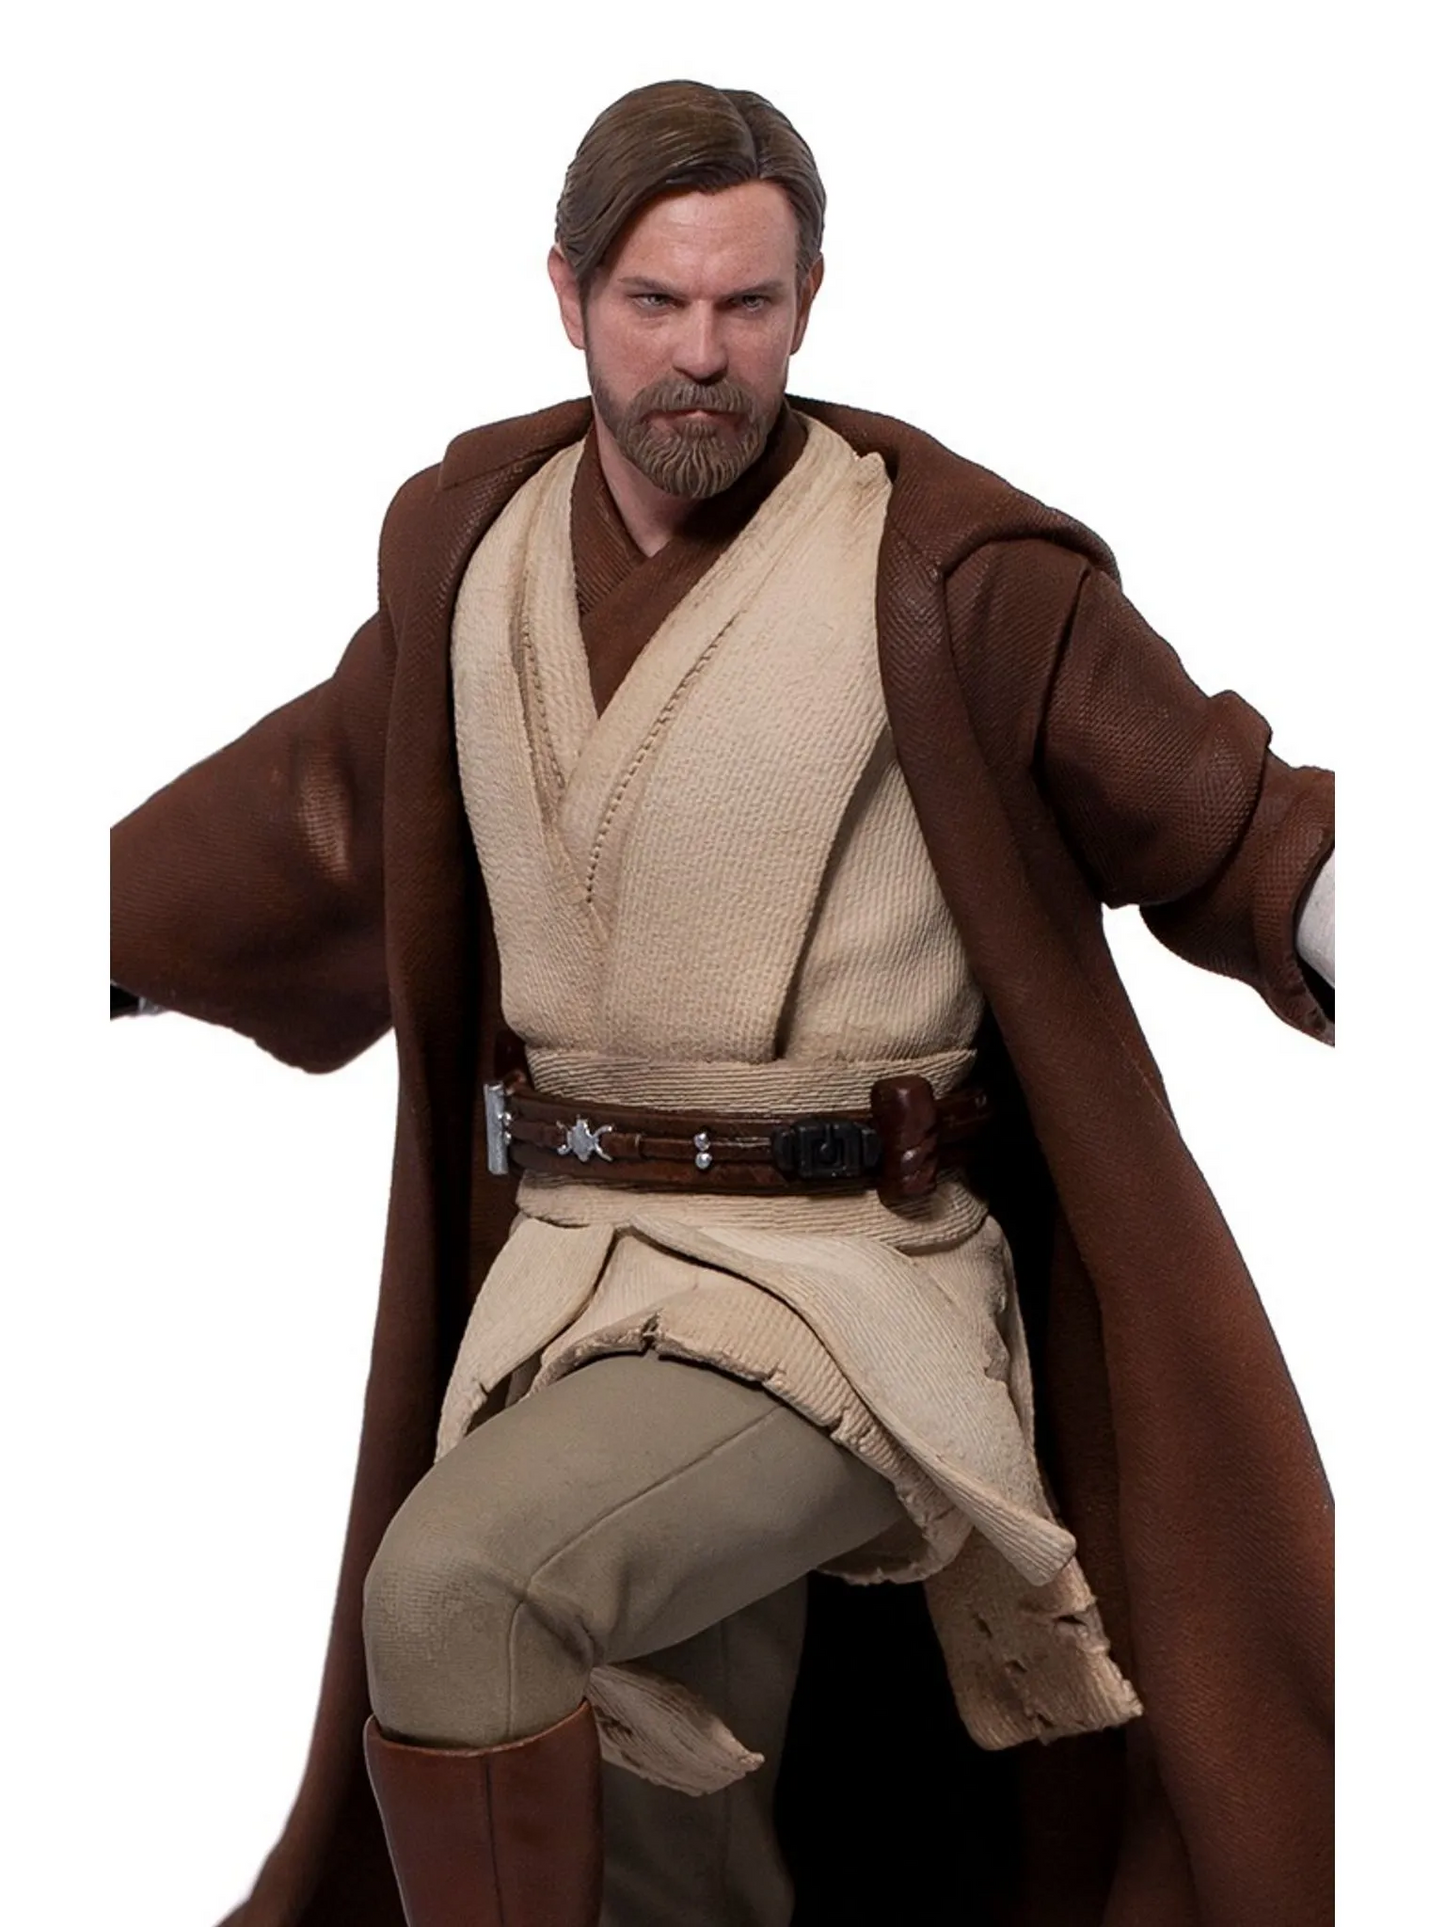 Pedido Estatua Obi-Wan Kenobi - Star Wars - Battle Diorama Series (BDS) - marca Iron Studios escala de arte 1/10